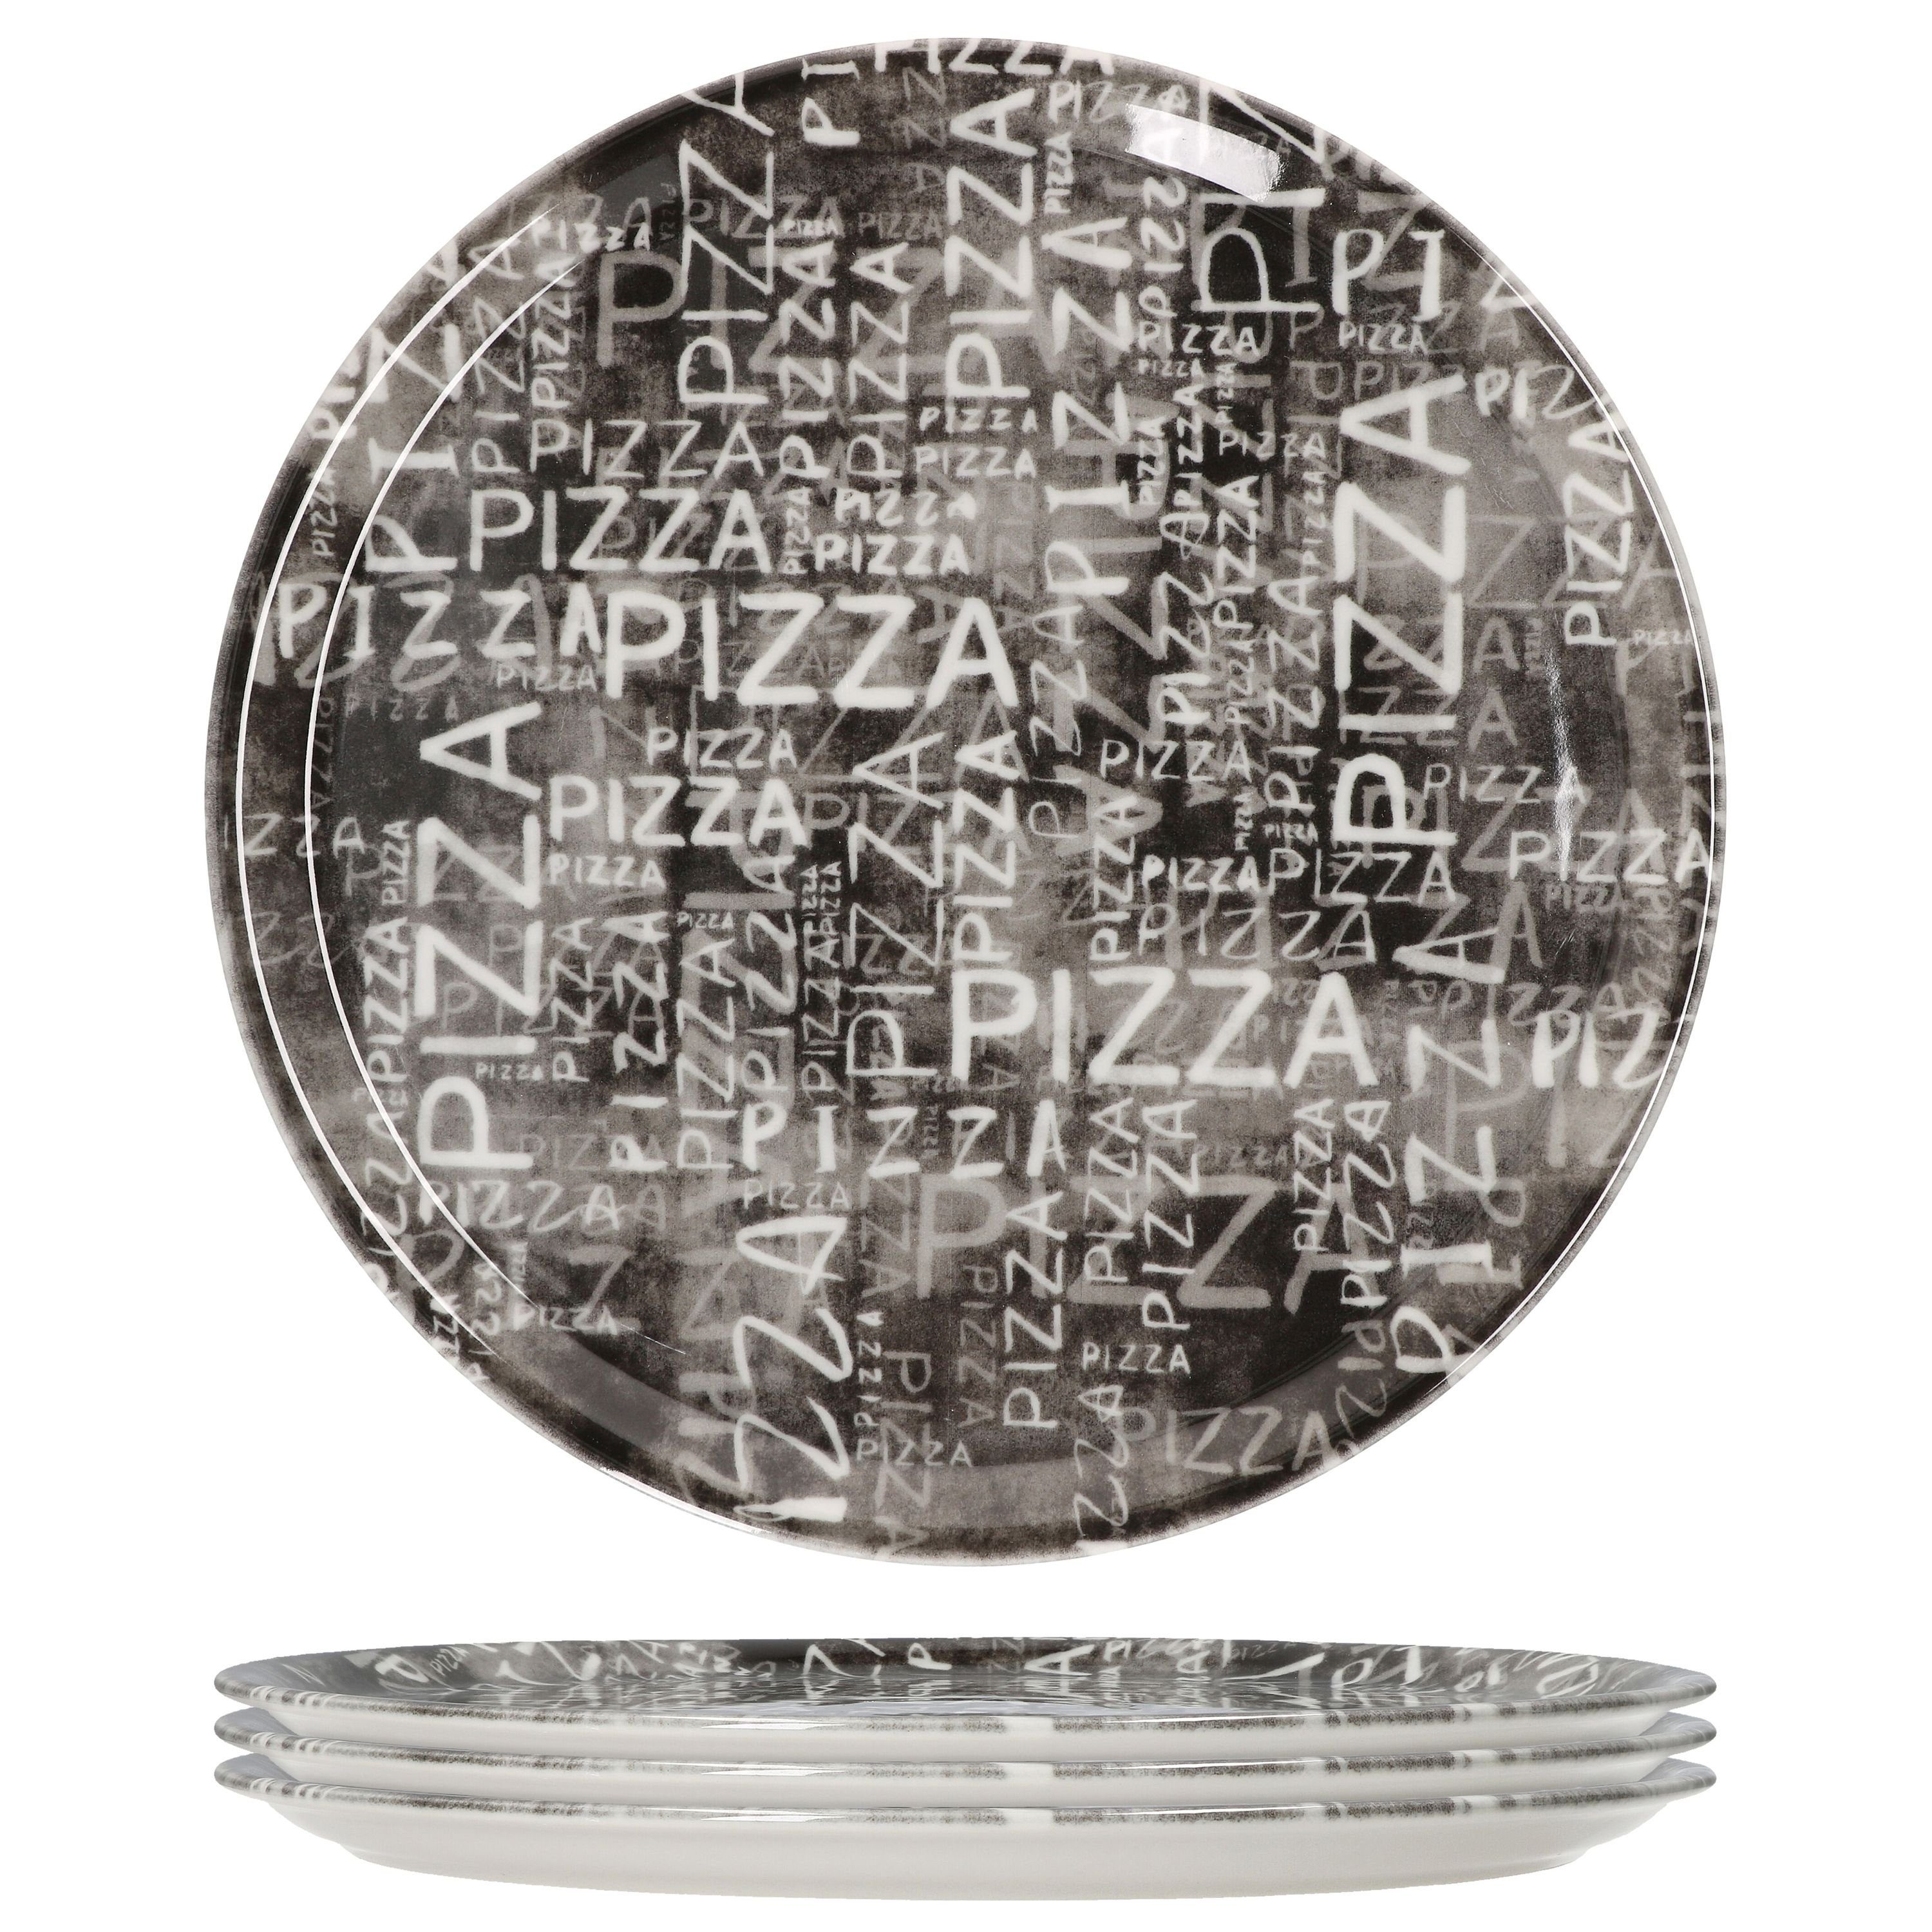 MamboCat Pizzateller 4er Set Pizzateller Napoli Black 33cm - 04018#Z70